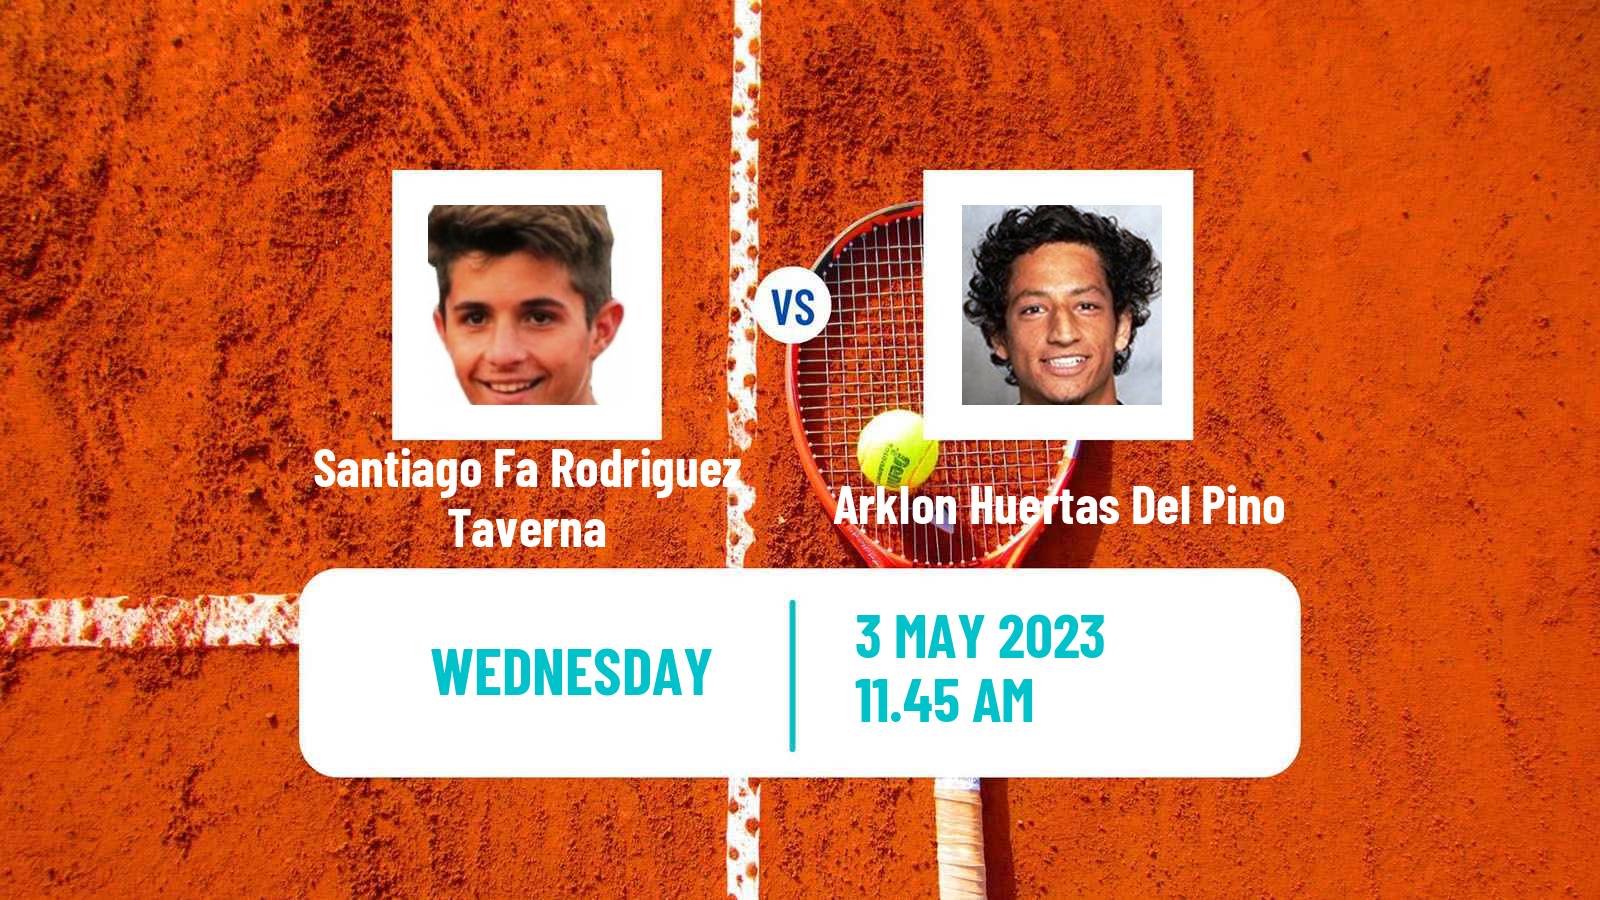 Tennis ATP Challenger Santiago Fa Rodriguez Taverna - Arklon Huertas Del Pino